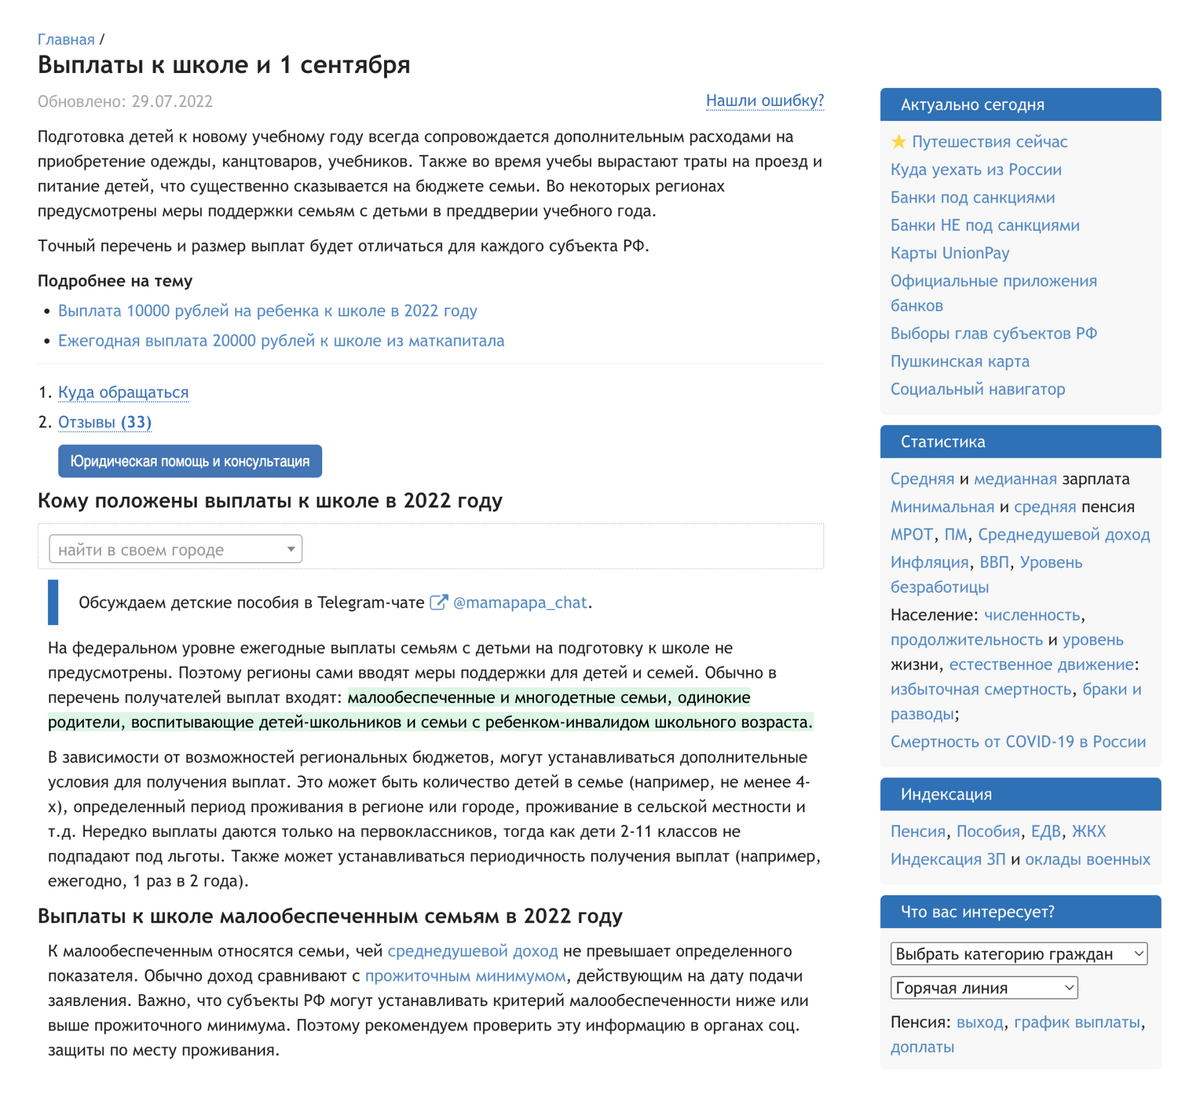 На сайте gogov.ru есть специальный раздел, где собирают информацию о социальных выплатах, которые связаны со школами